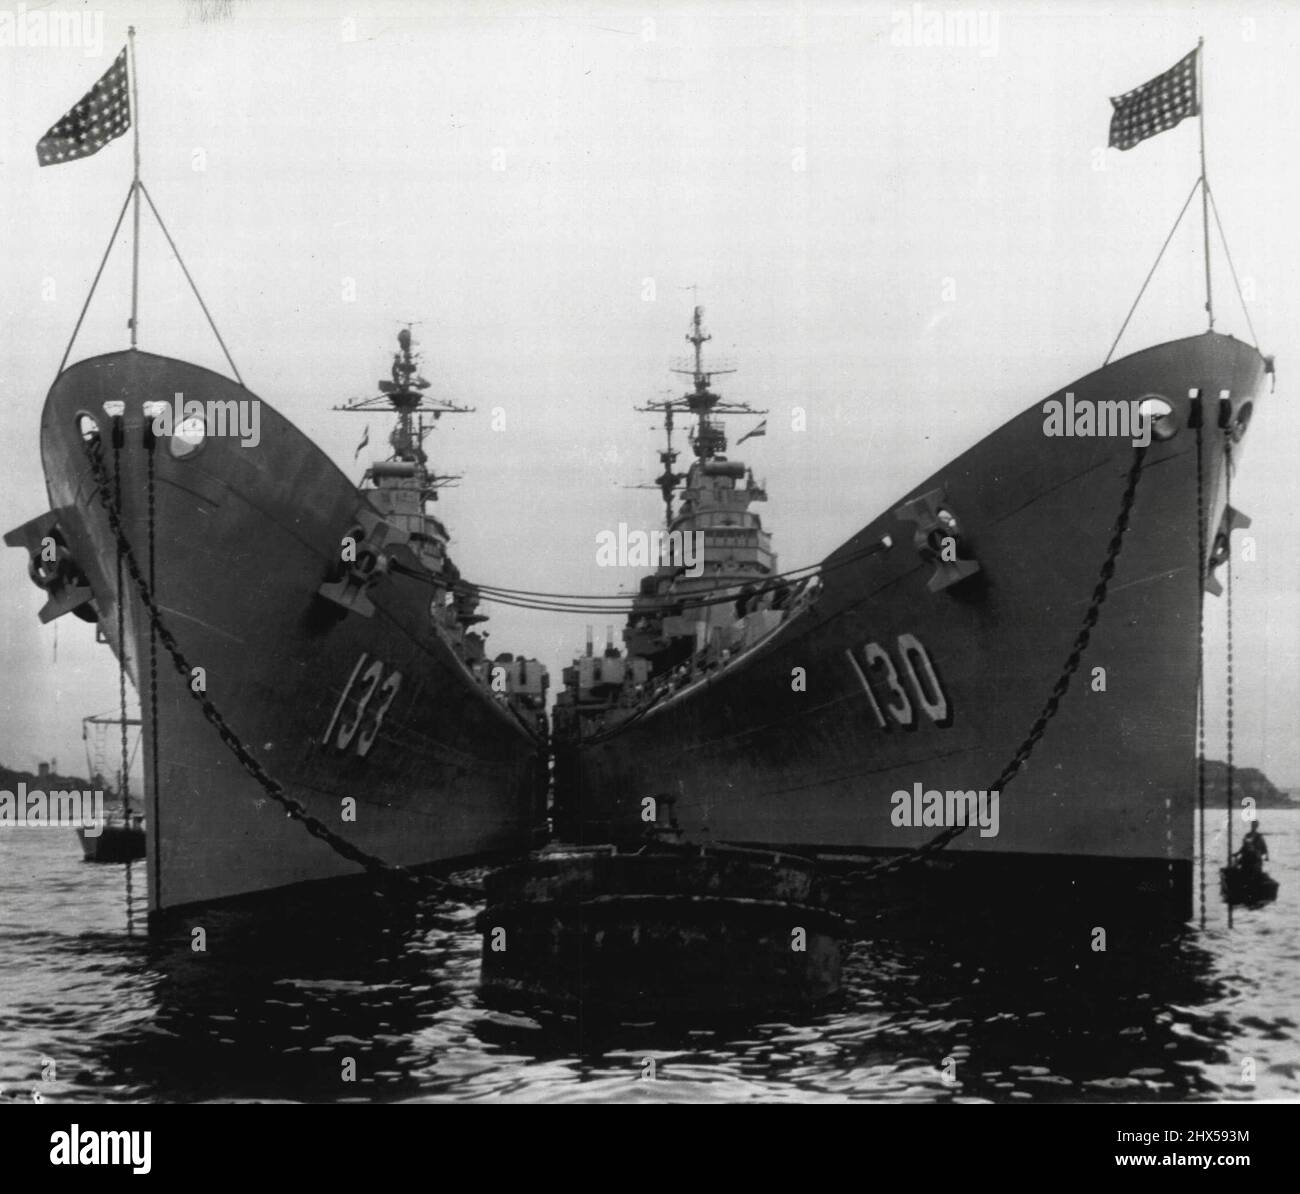 Vorbereitungen Zur Entlastung. Die schwere Cruiser USS Toledo (links) liegt an der Seite ihres Schwesterschiffes, der Bremerton, in einem Hafen im Fernen Osten, um das letztere Schiff auf einer Dienstreise mit der 7. US-Flotte in koreanischen Gewässern zu entlasten. Die Bremerton ist zur Überholung in die Vereinigten Staaten zurückgekehrt. 3. Oktober 1952. (Foto von AP Wirephoto). Stockfoto